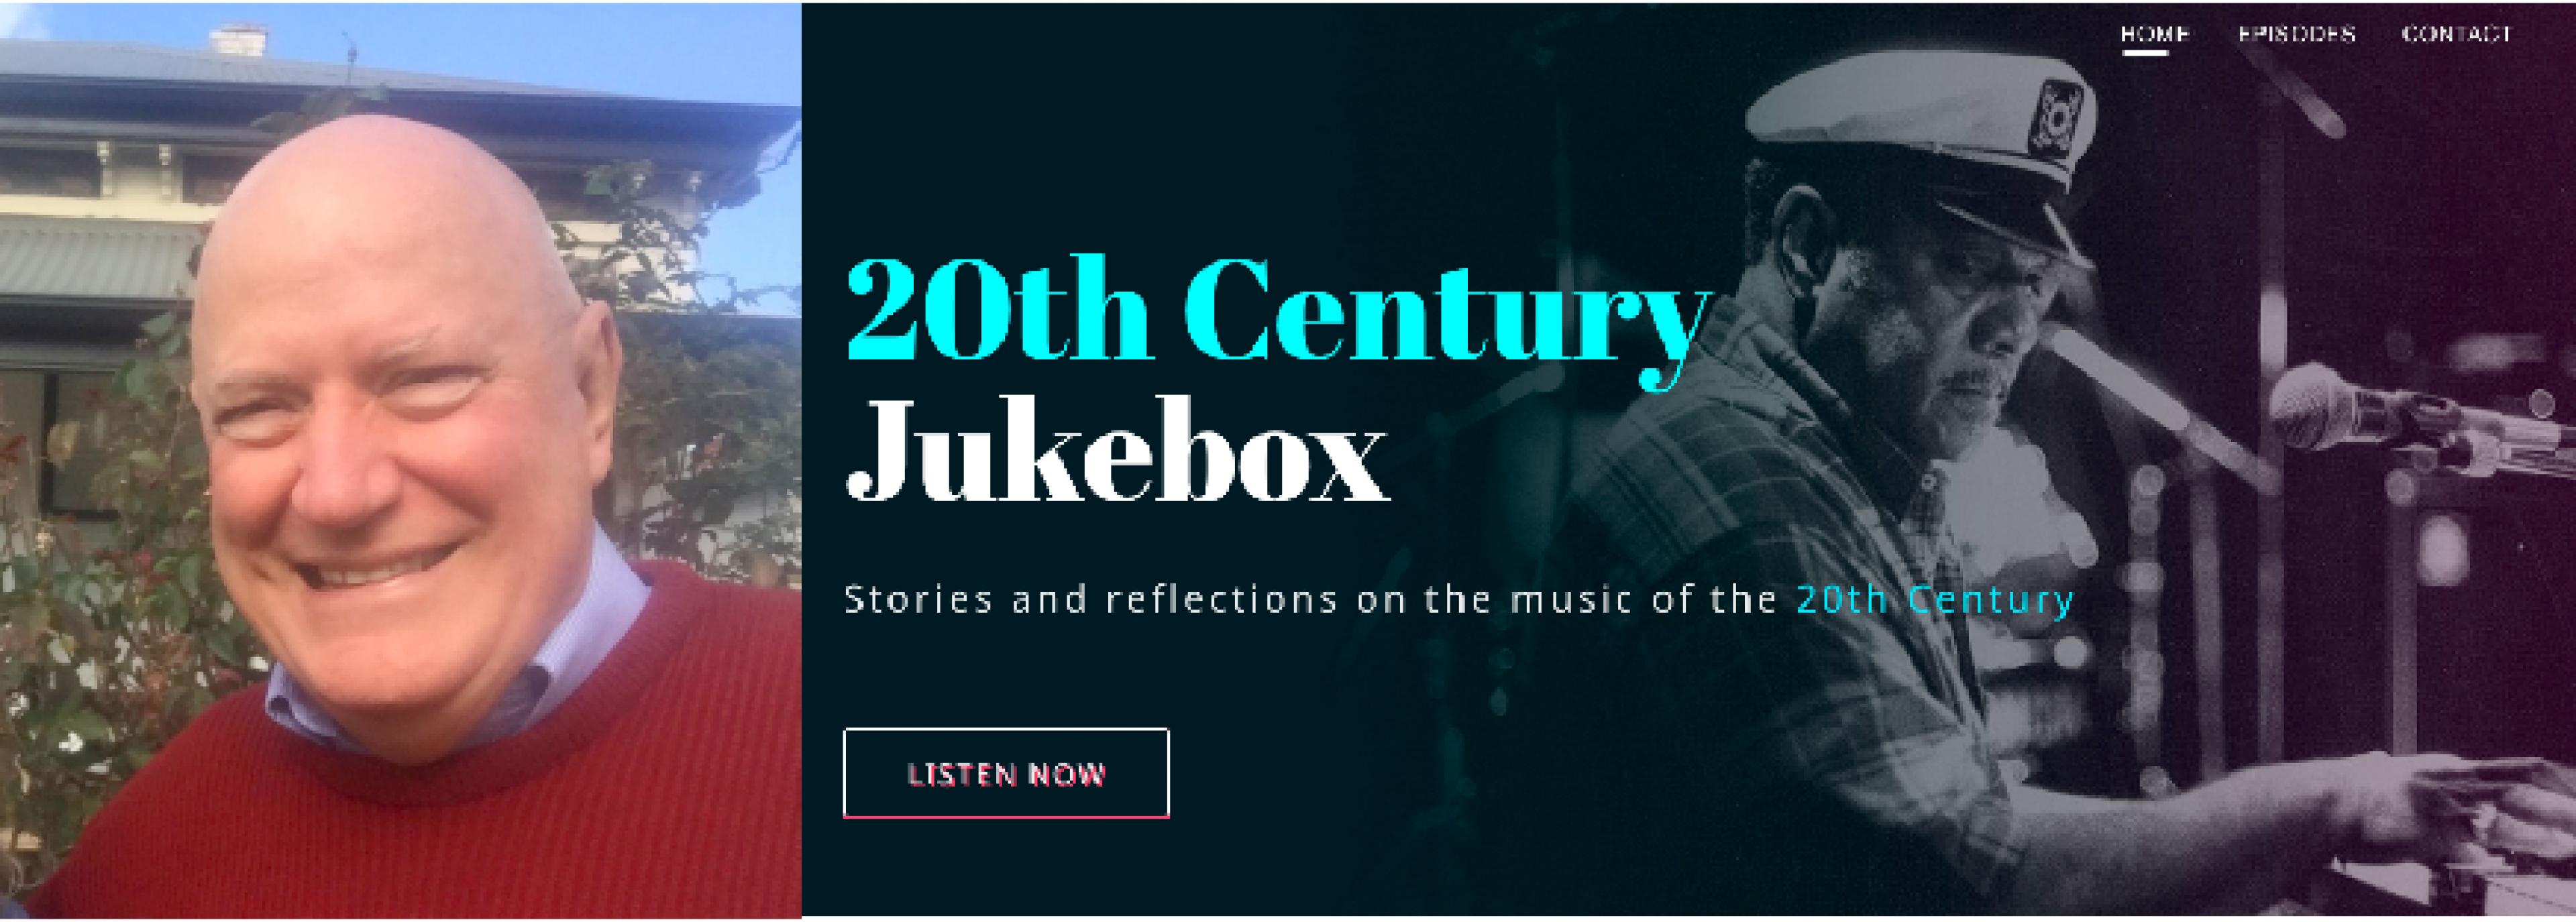 Das Foto zeigt den Musikexperten John Kenneally aus Adelaide und seinen Blog 20th Century Jukebox